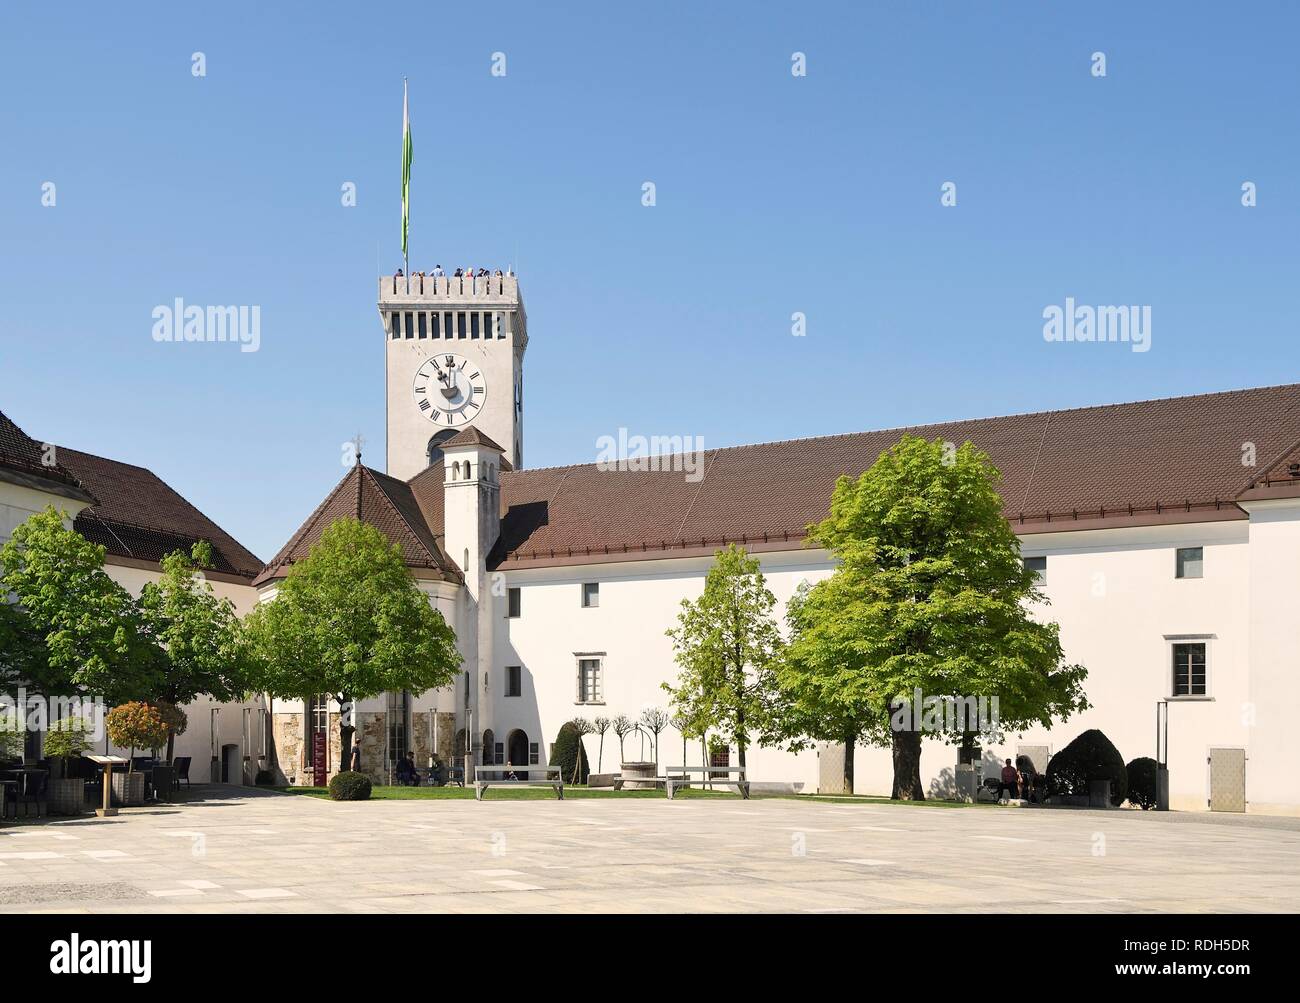 El patio del castillo medieval, Ljubljana, Eslovenia Foto de stock